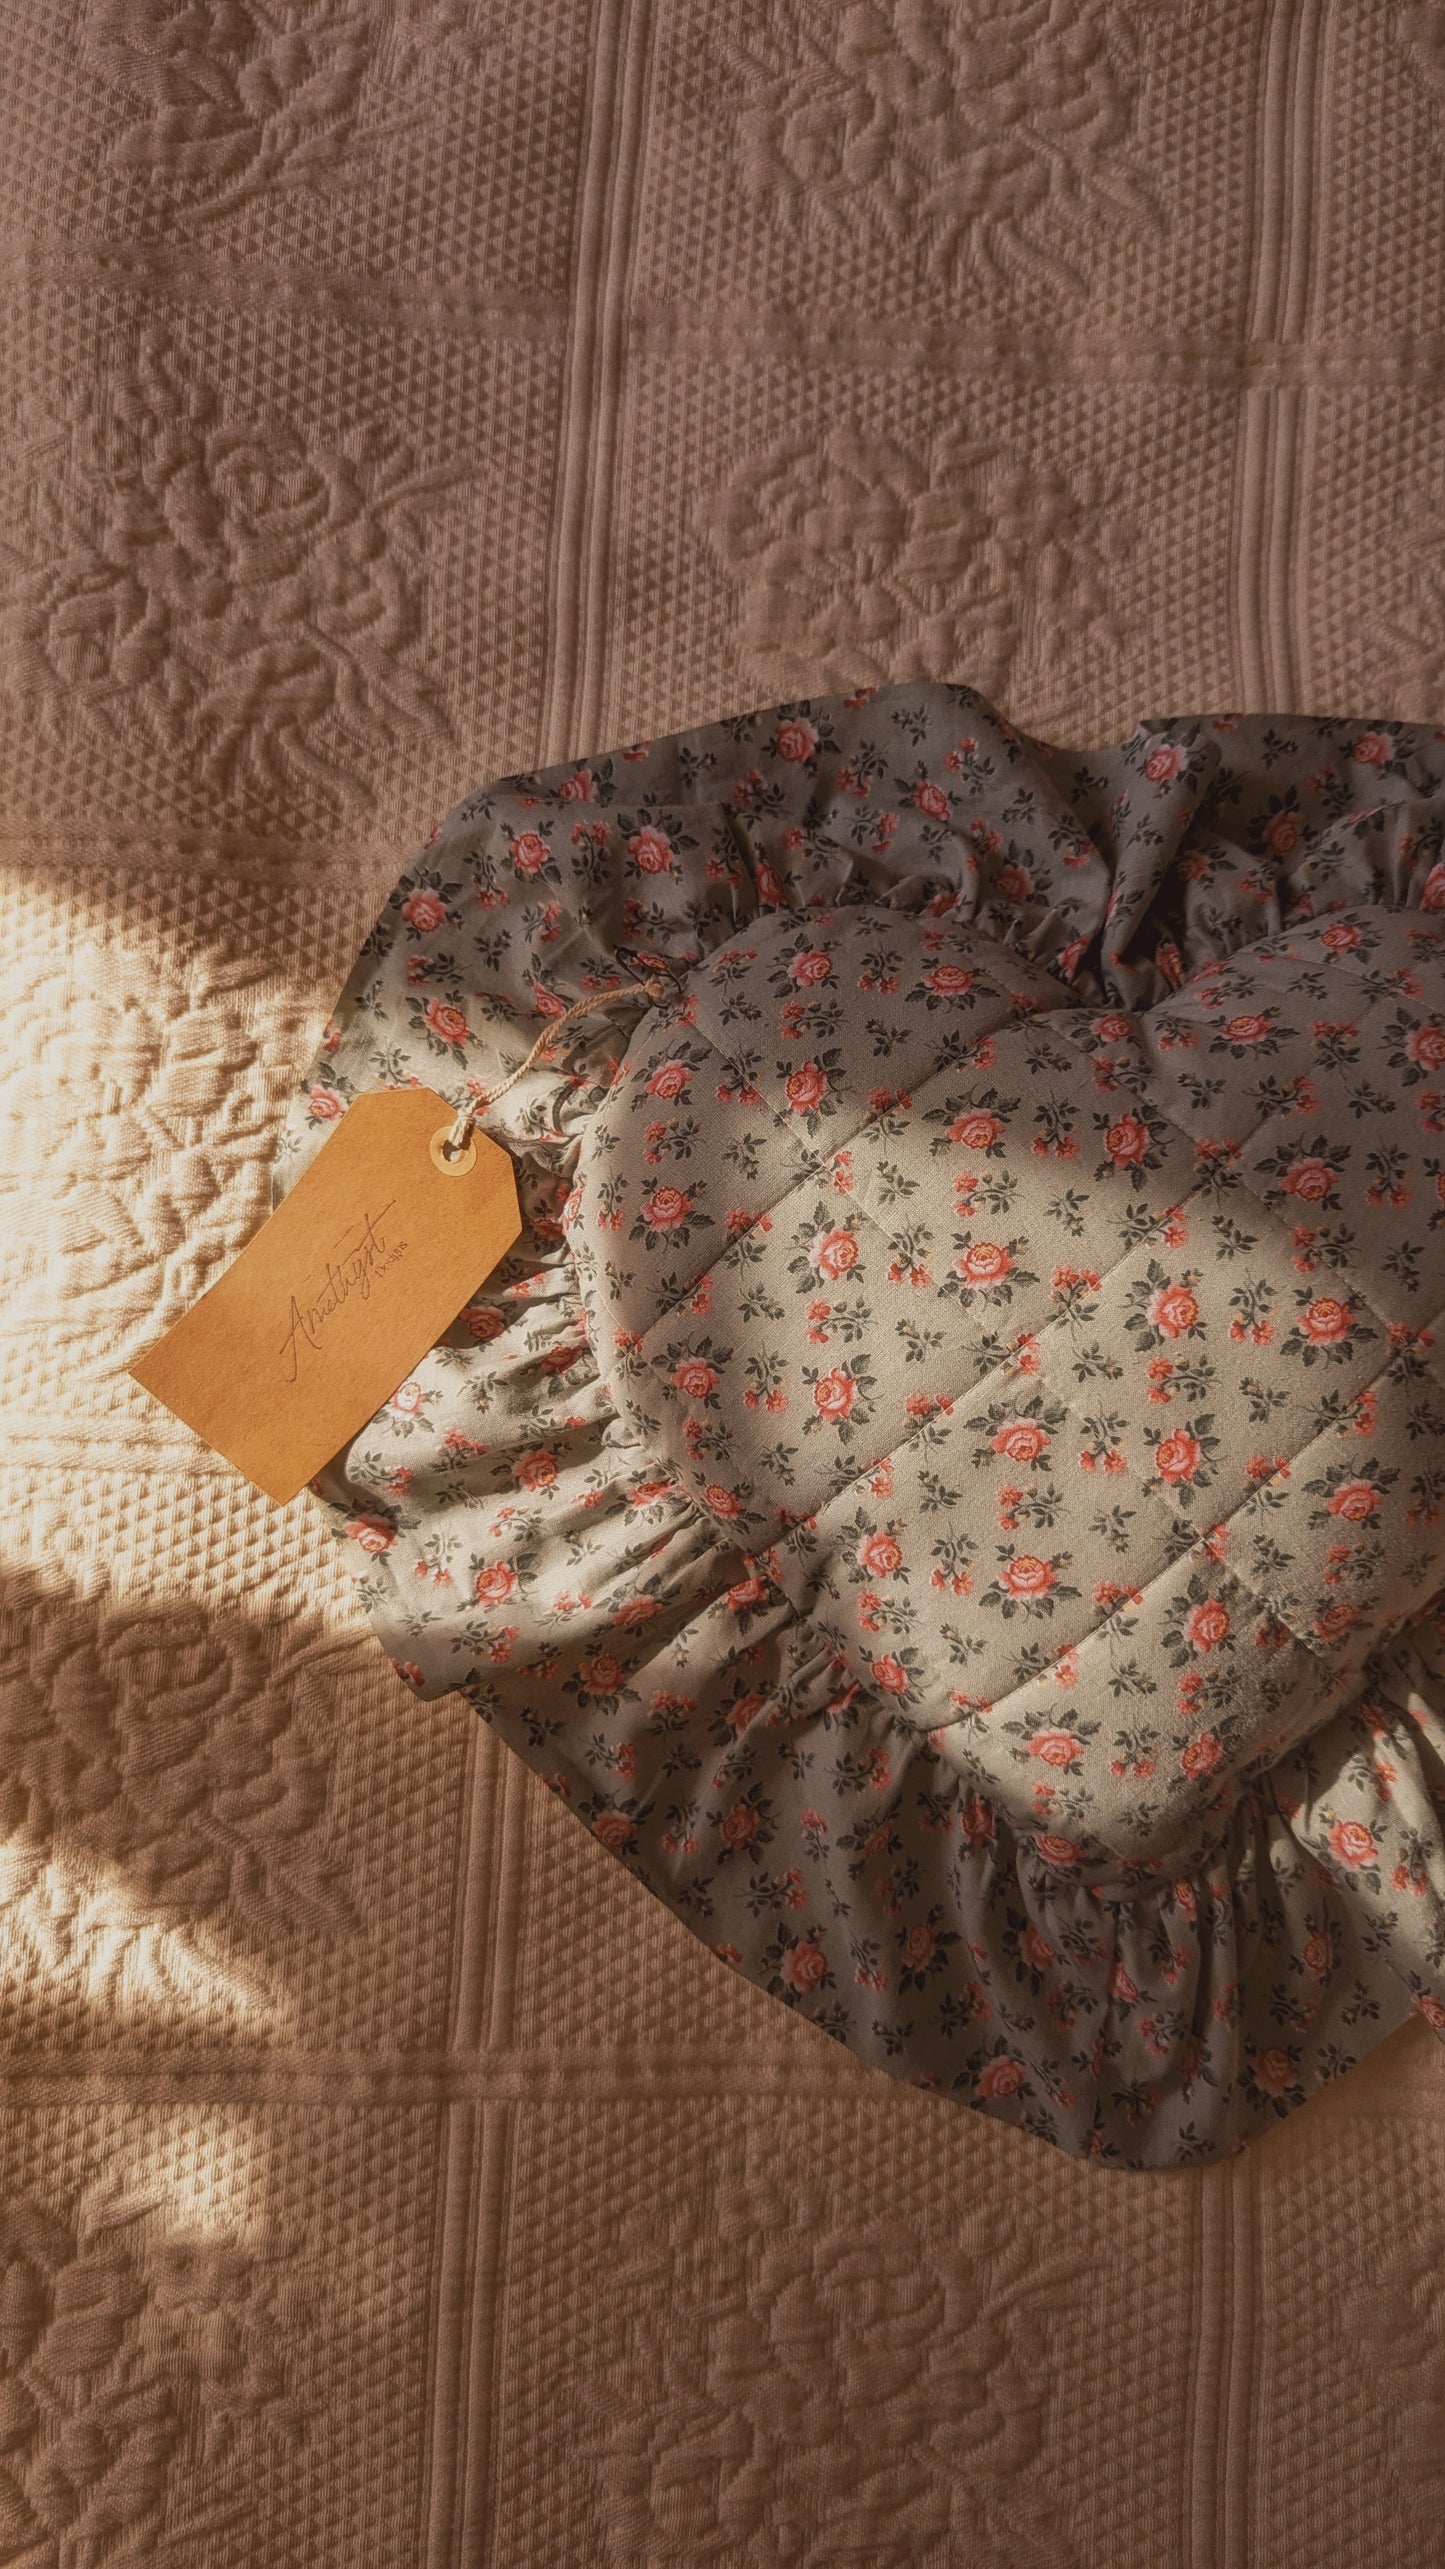 Handmade ruffled heart pillow - secret garden ♡